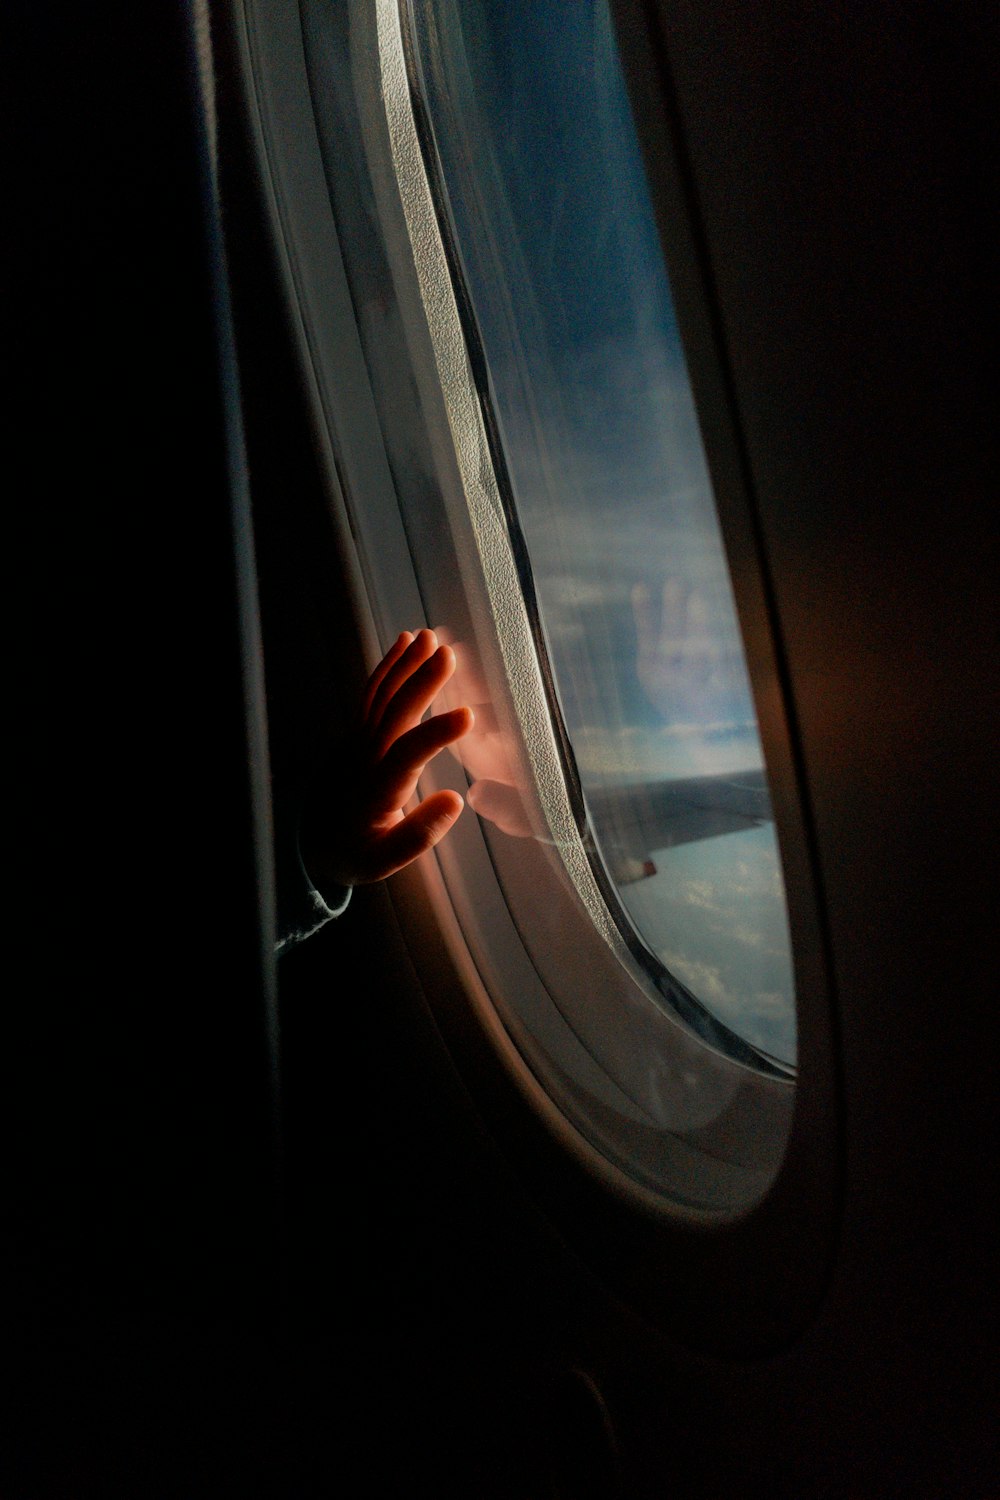 la main d’une personne sur la fenêtre d’un avion